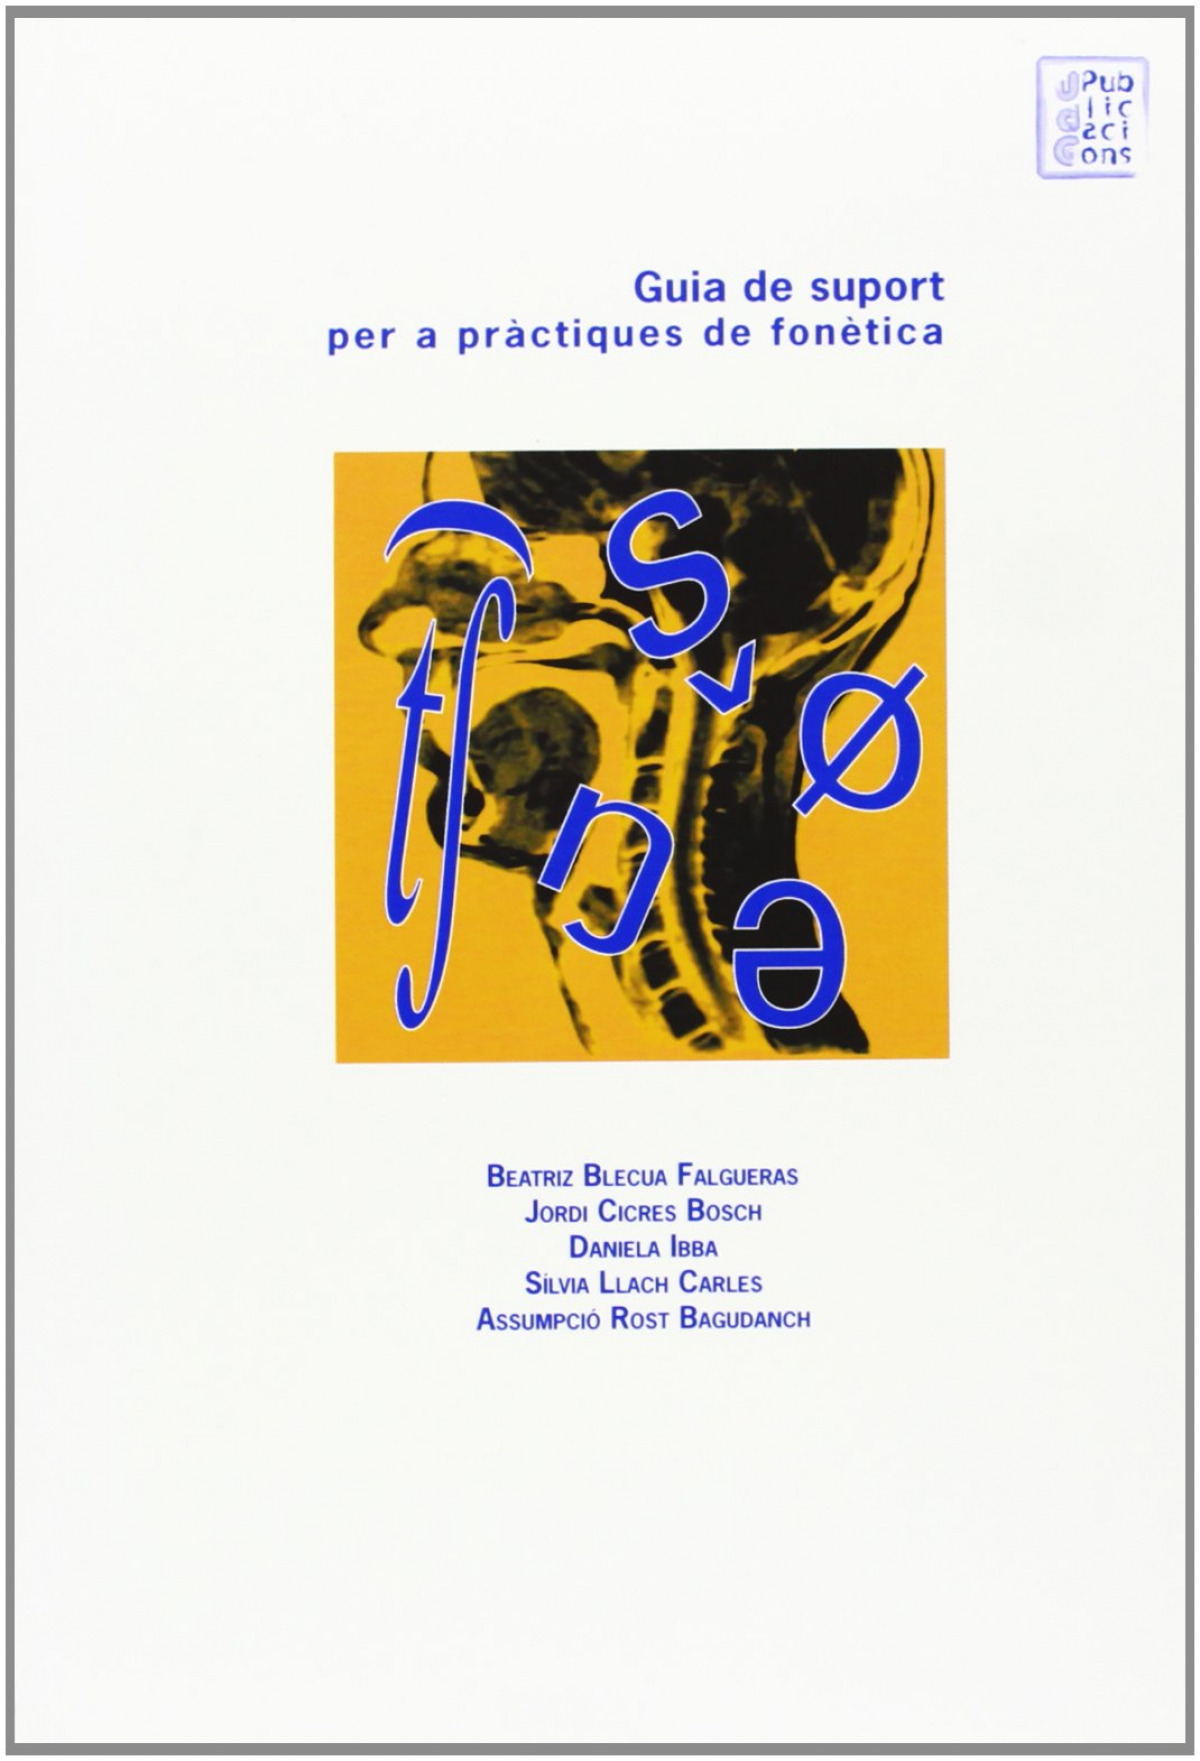 Guia de suport per a pràctiques de fonètica - Rost Bagudanch, Assumpció/ Llach Carles,